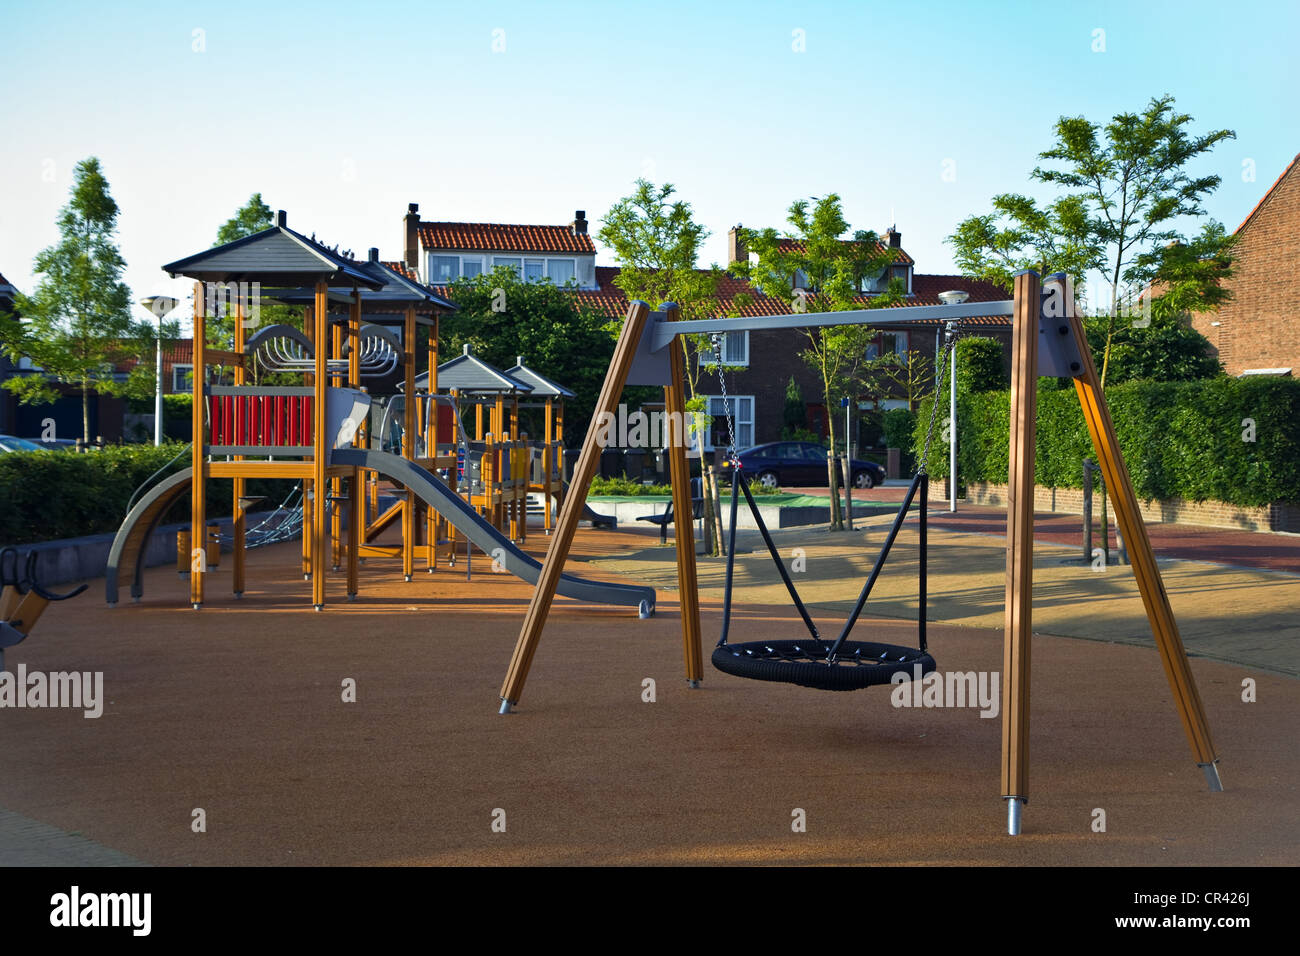 Öffentlicher Spielplatz mit bunten Klettern Bau, Schaukel, Rutschen und Kautschuk Holzboden für sicheres spielen Stockfoto